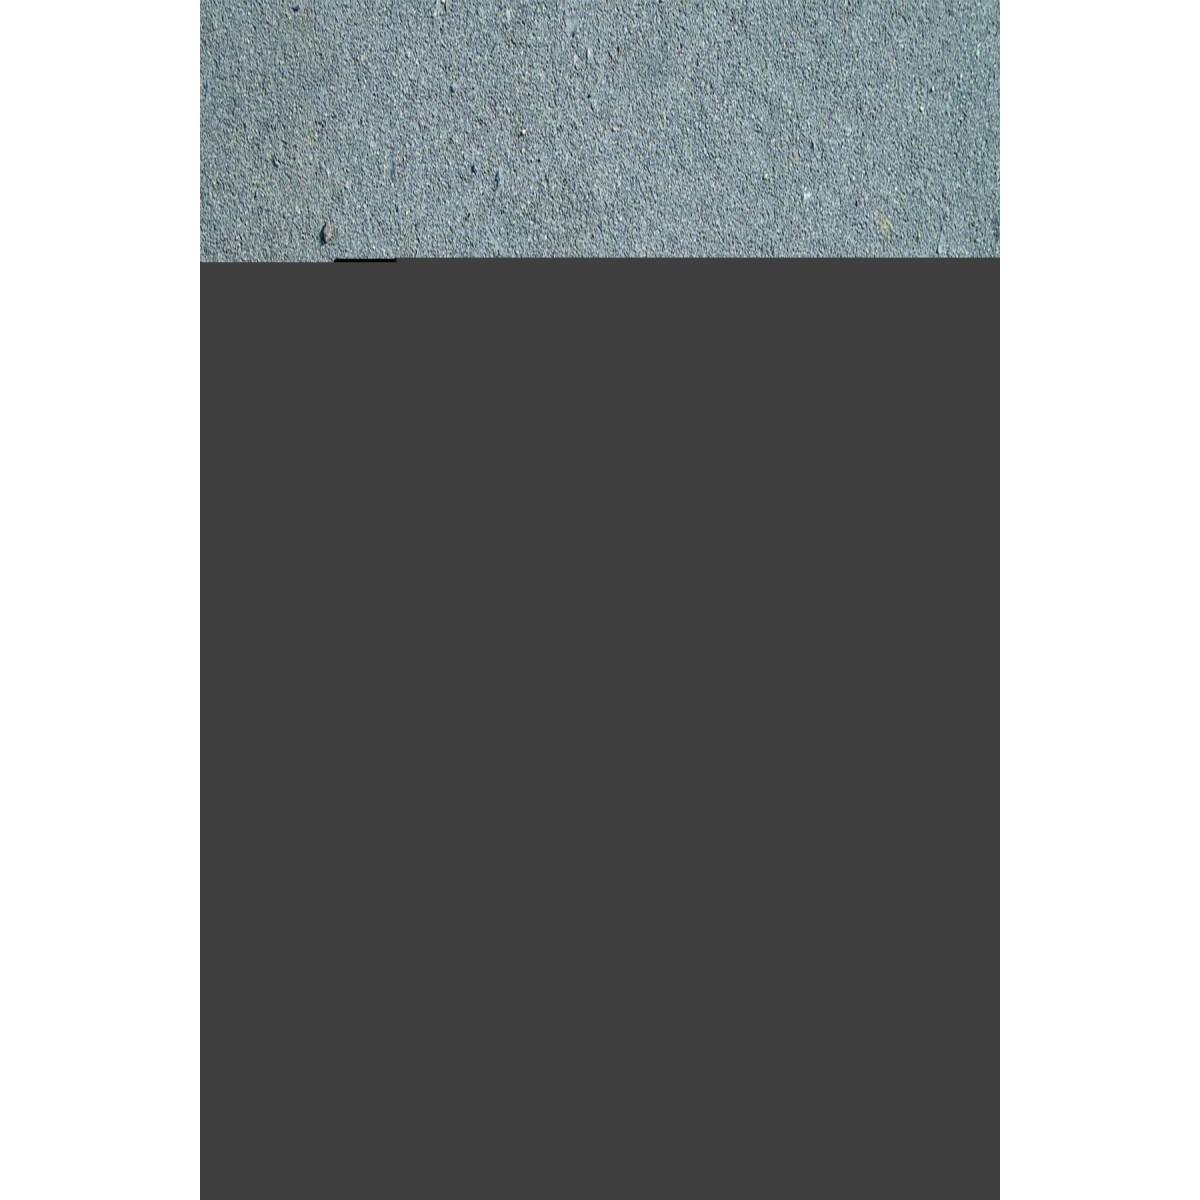 Tuval Üzerine Yelkenli Kanvas Tablo Baskı 70 X 100 Görsel Rengi